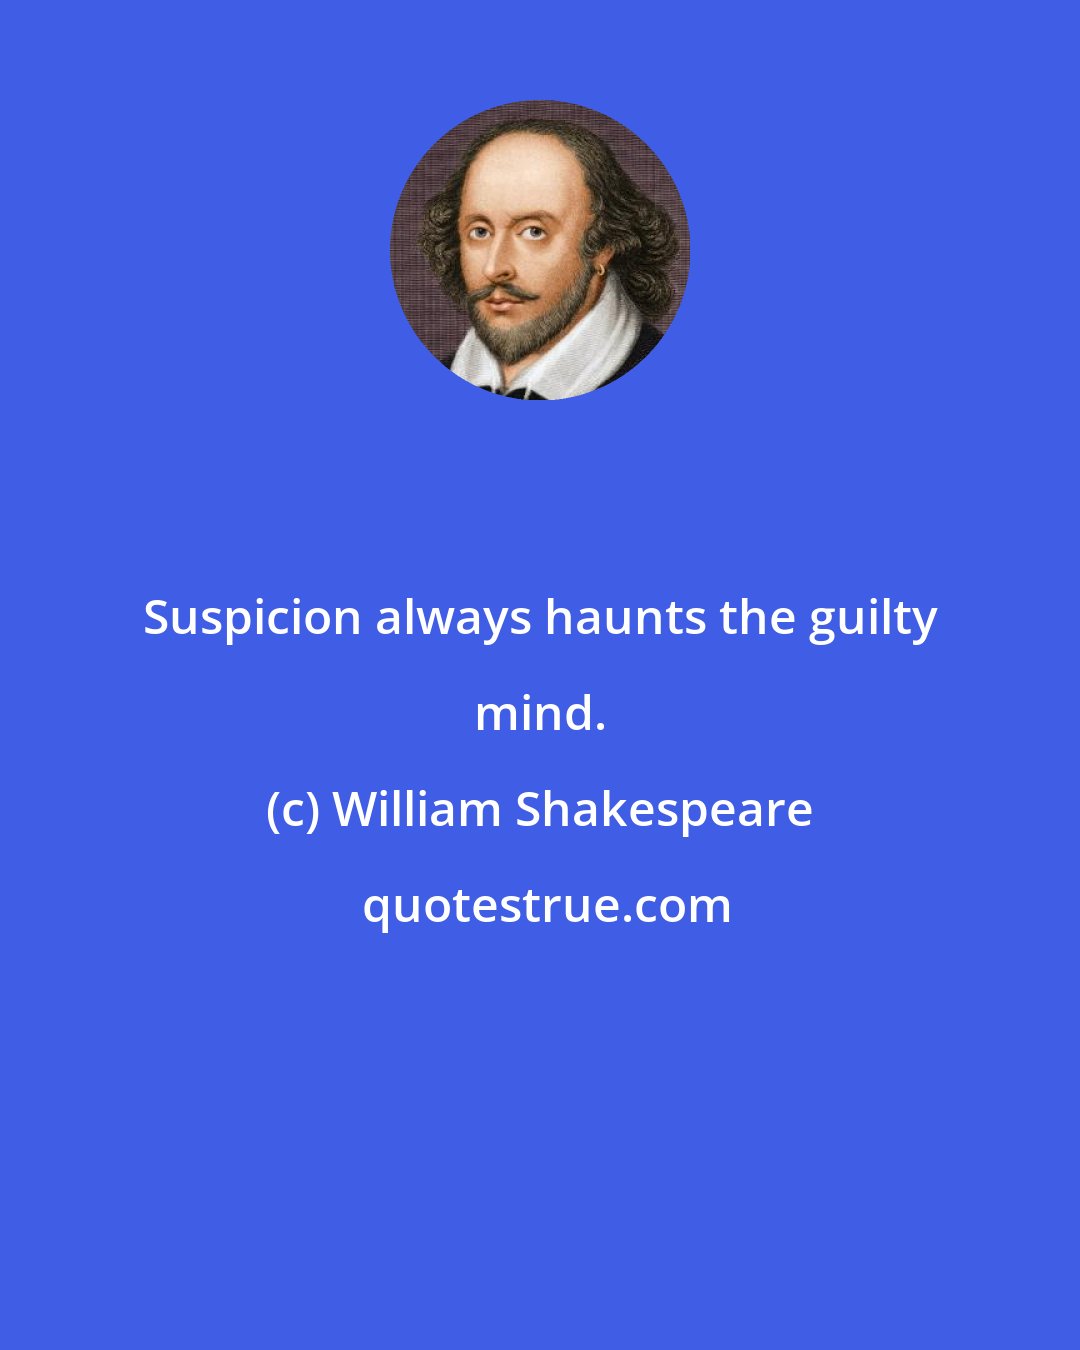 William Shakespeare: Suspicion always haunts the guilty mind.